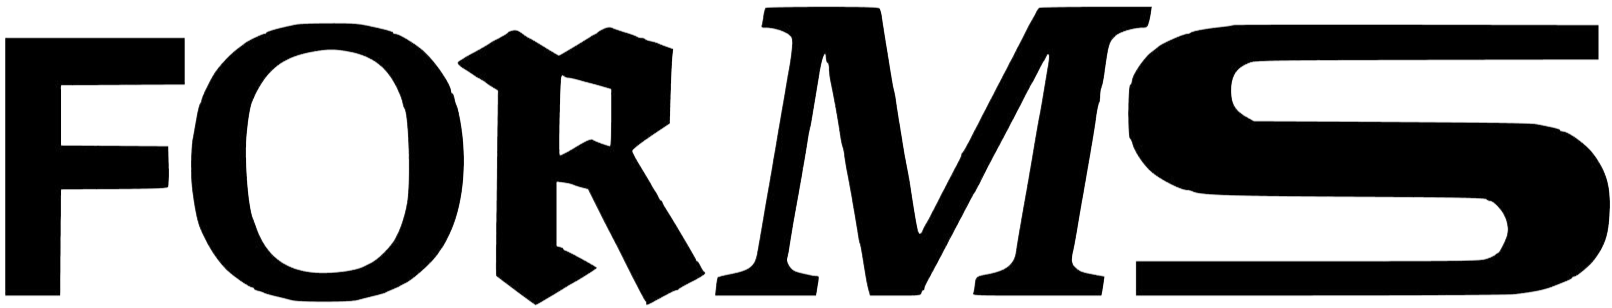 supporter logo